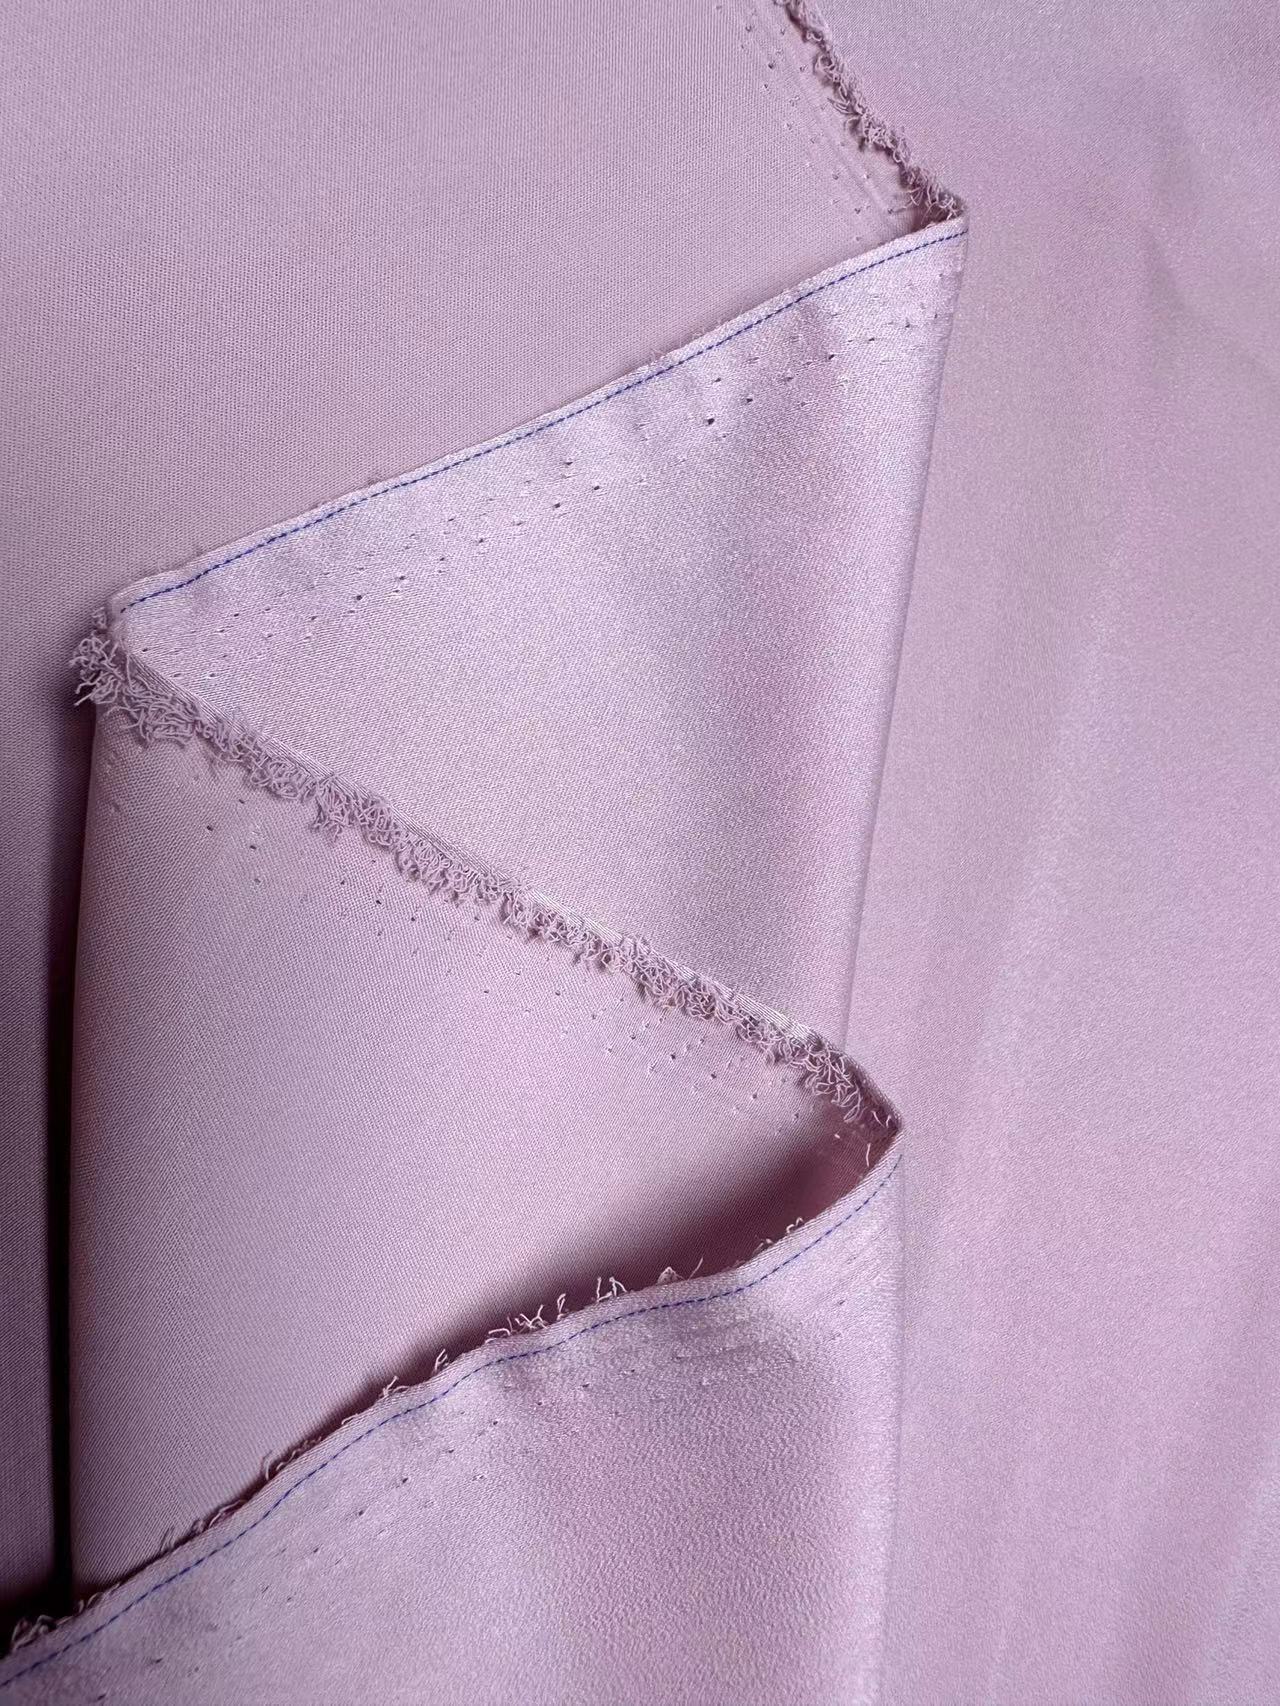 Acetate Velvet Satin Dress Dress Pajamas Artificial Silk Acetate Satin Fabric Bride Veil